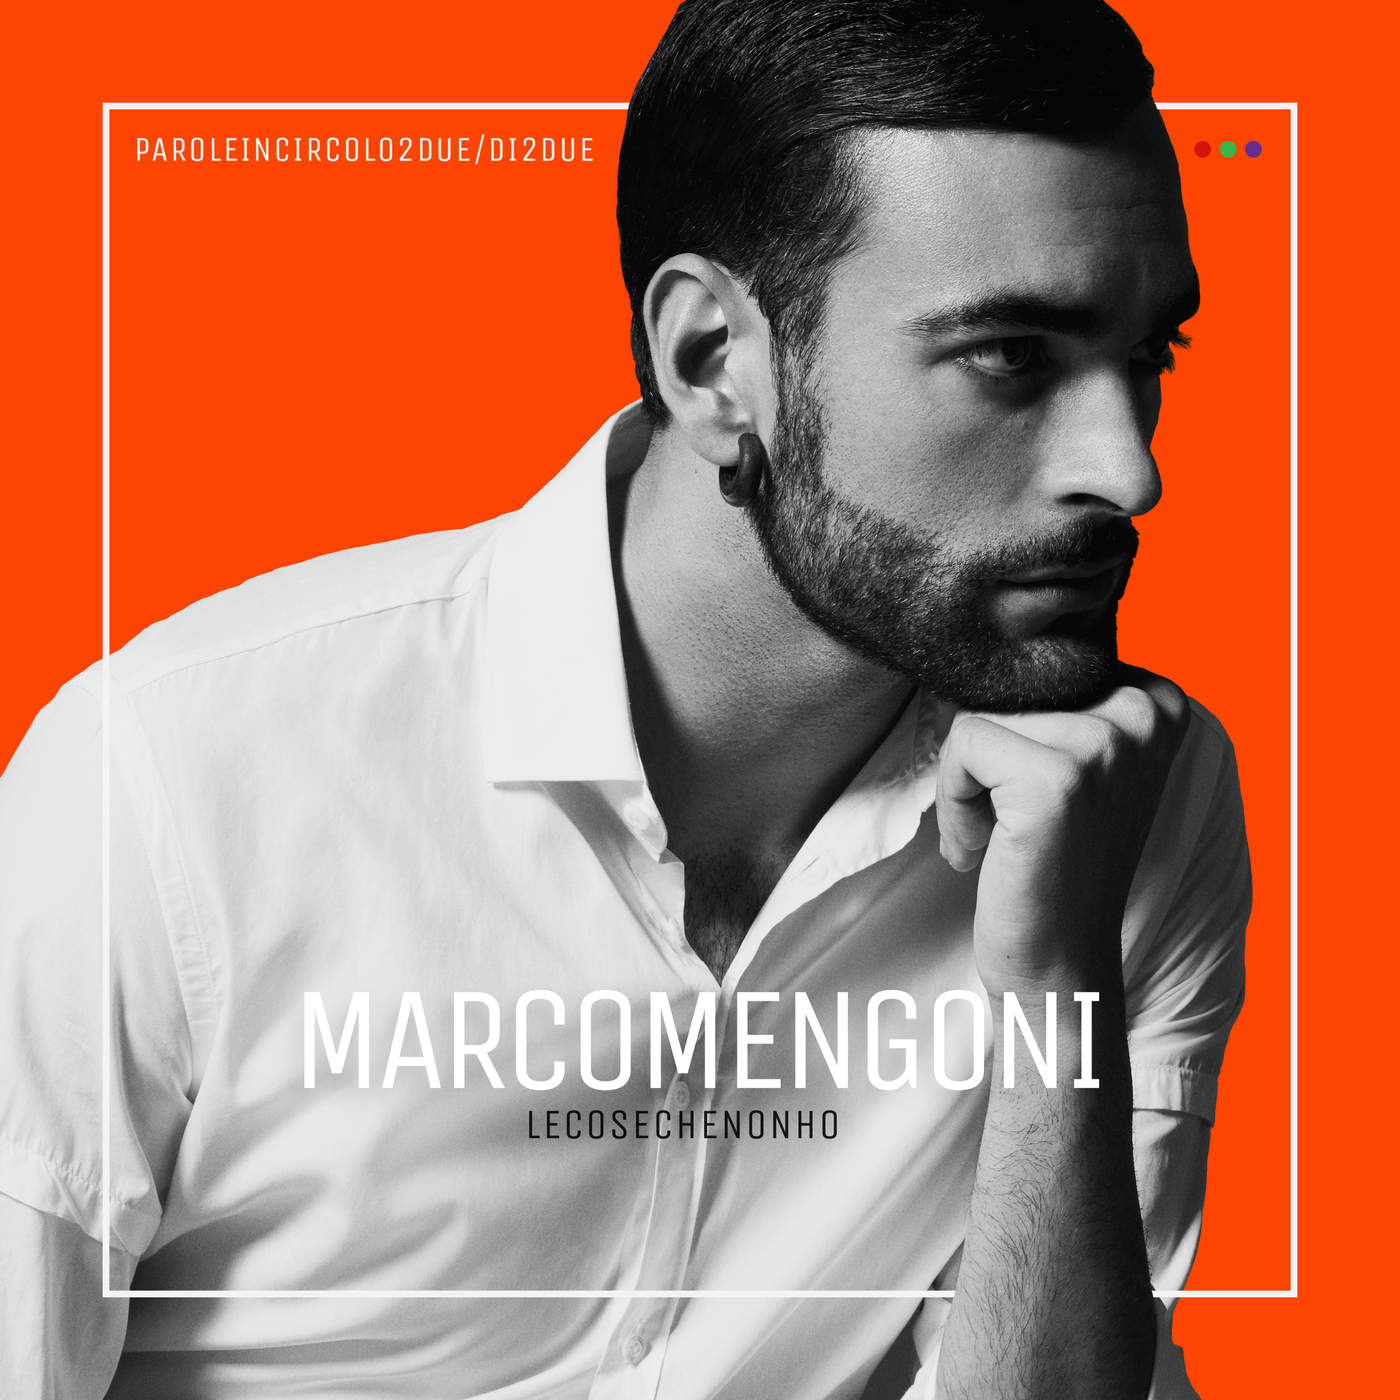 Marco Mengoni - Le cose che non ho (2015) [iTunes Plus AAC M4A] + FLAC-新房子